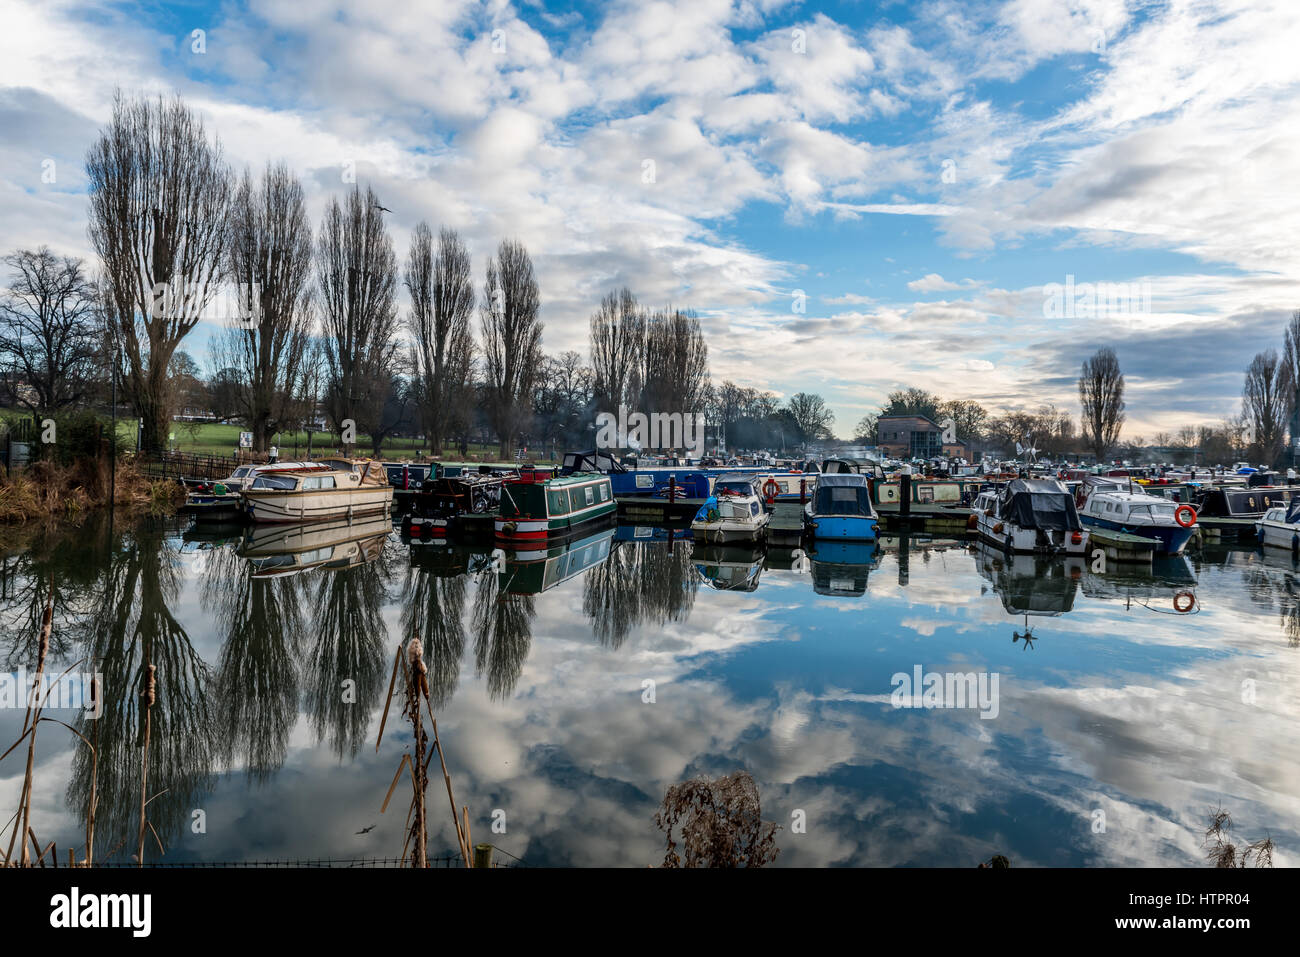 Boats parked at Marina in Northampton, United Kingdom Stock Photo